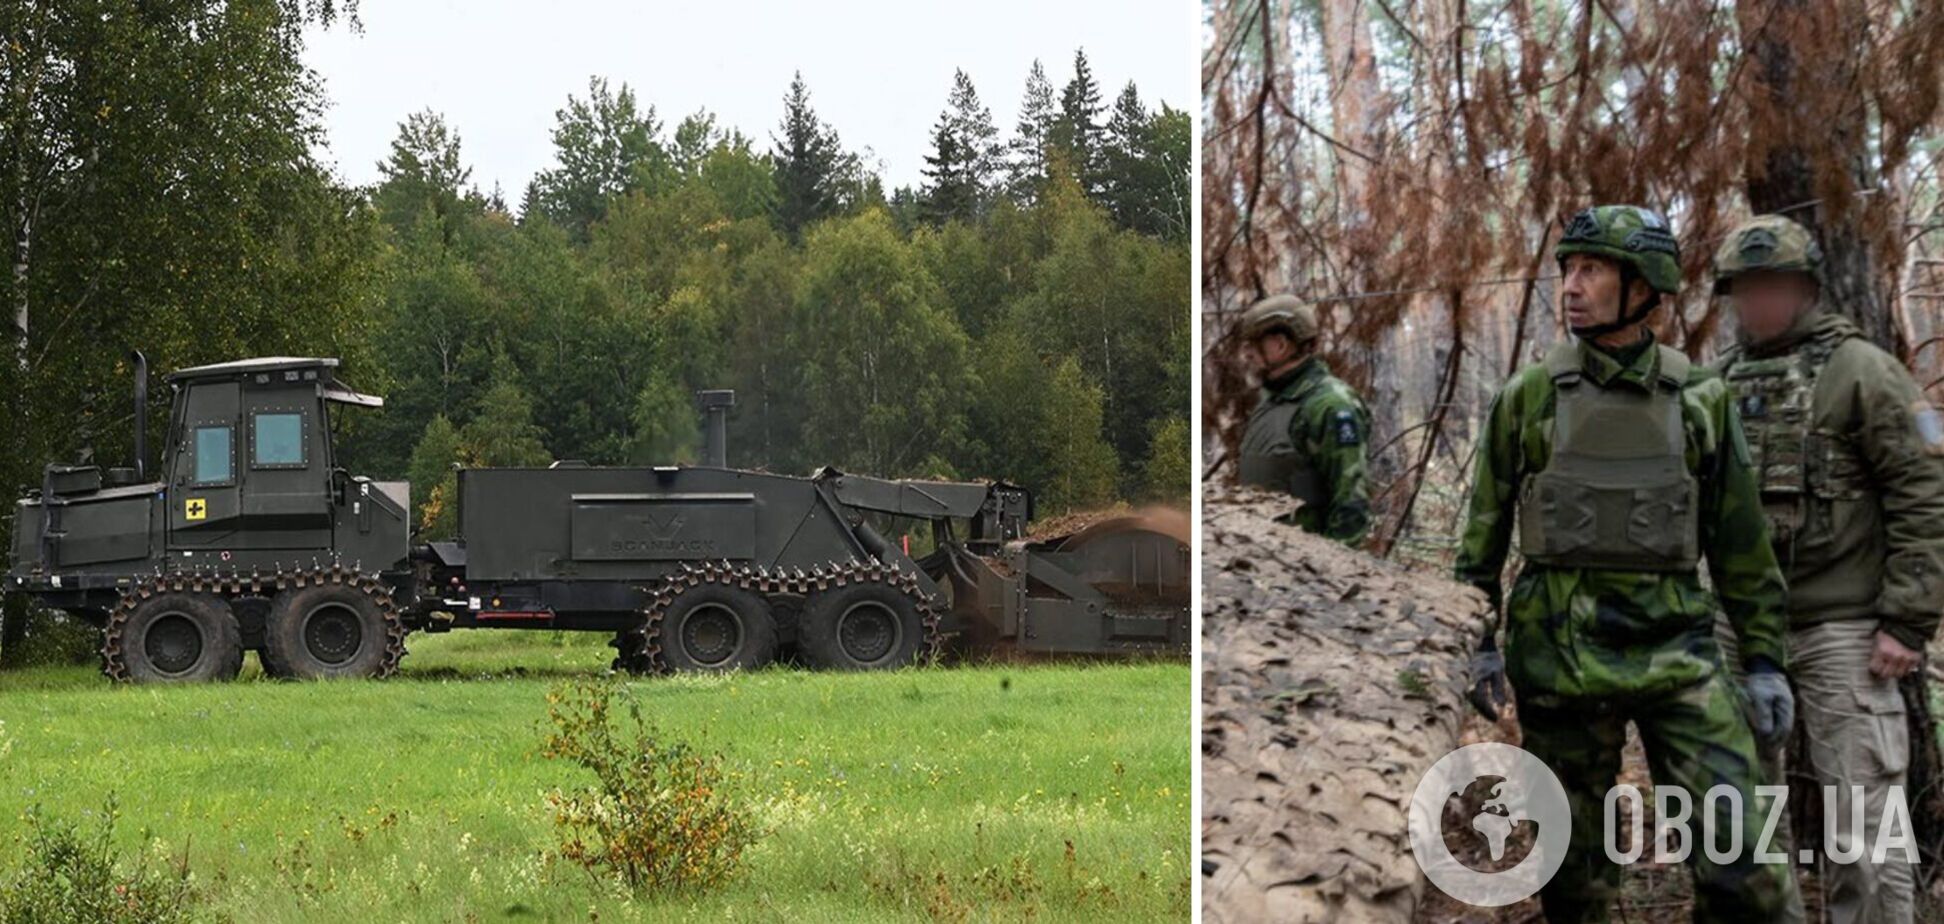 Сприяє підвищенню безпеки: в міноборони Швеції розповіли про навчання українських військових механічному розмінуванню. Фото